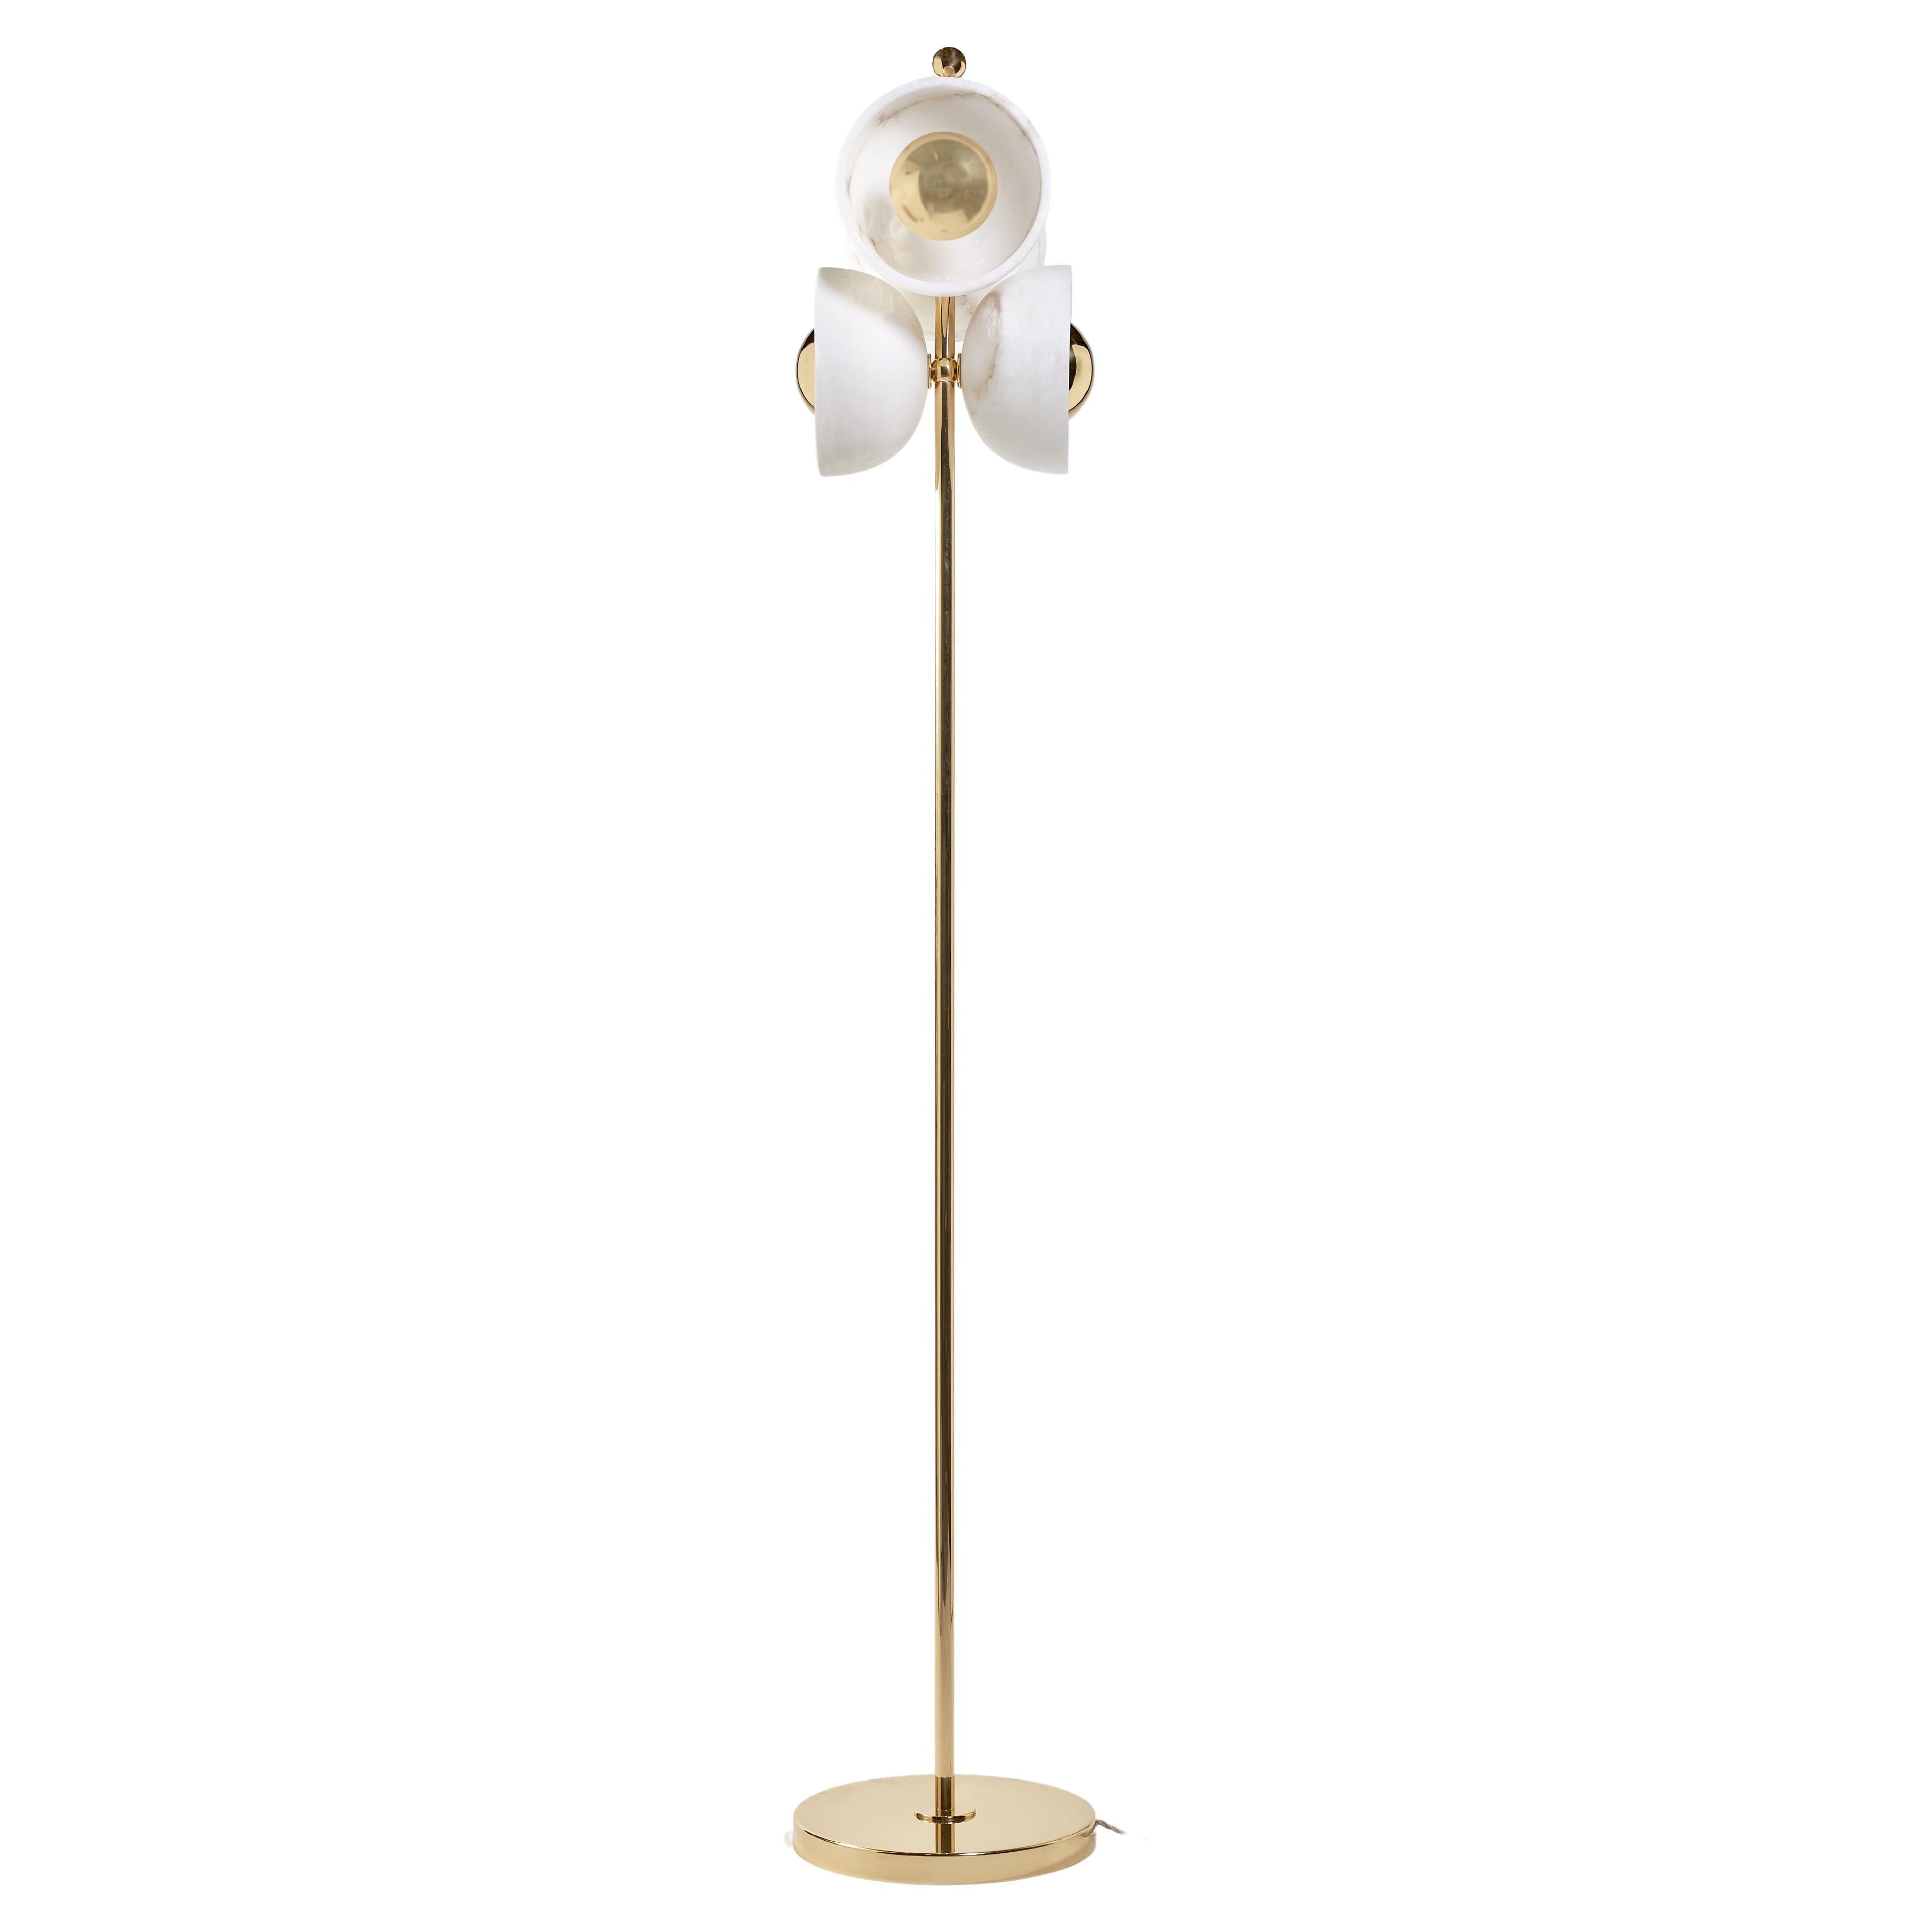 Elegant Italian Floor Lamp "Butterly" 